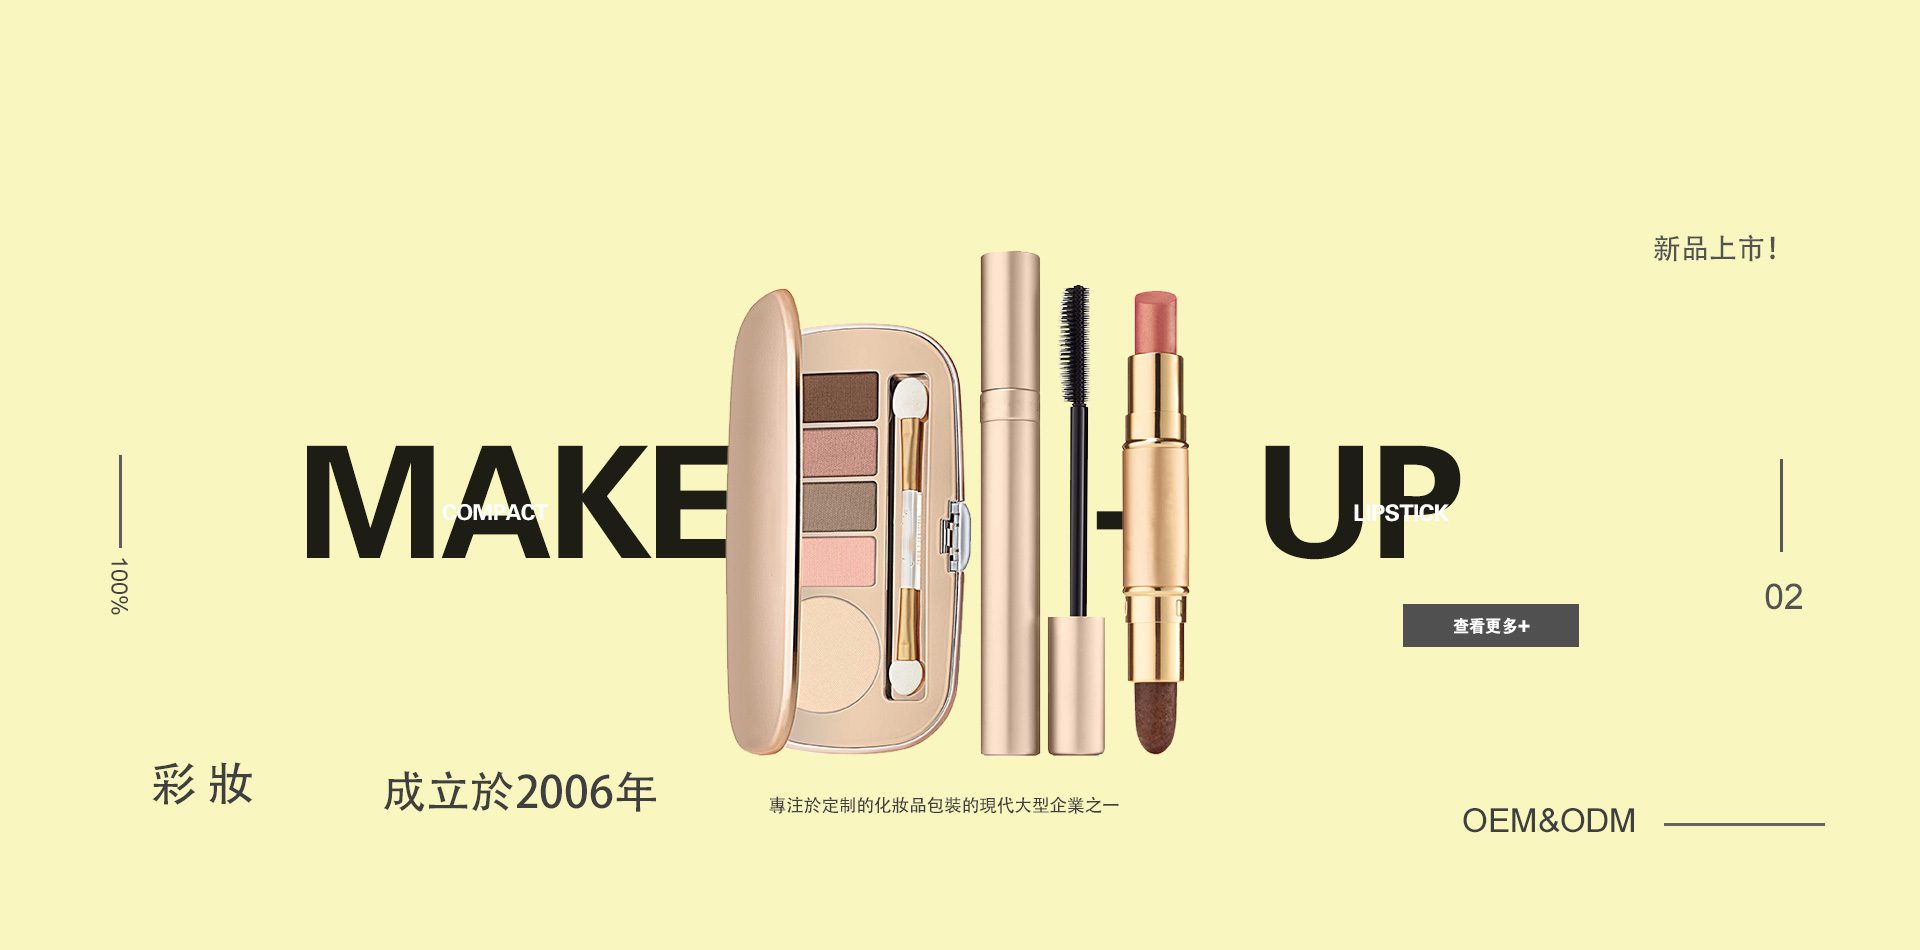 Make-up-banner灰色版-繁体版02